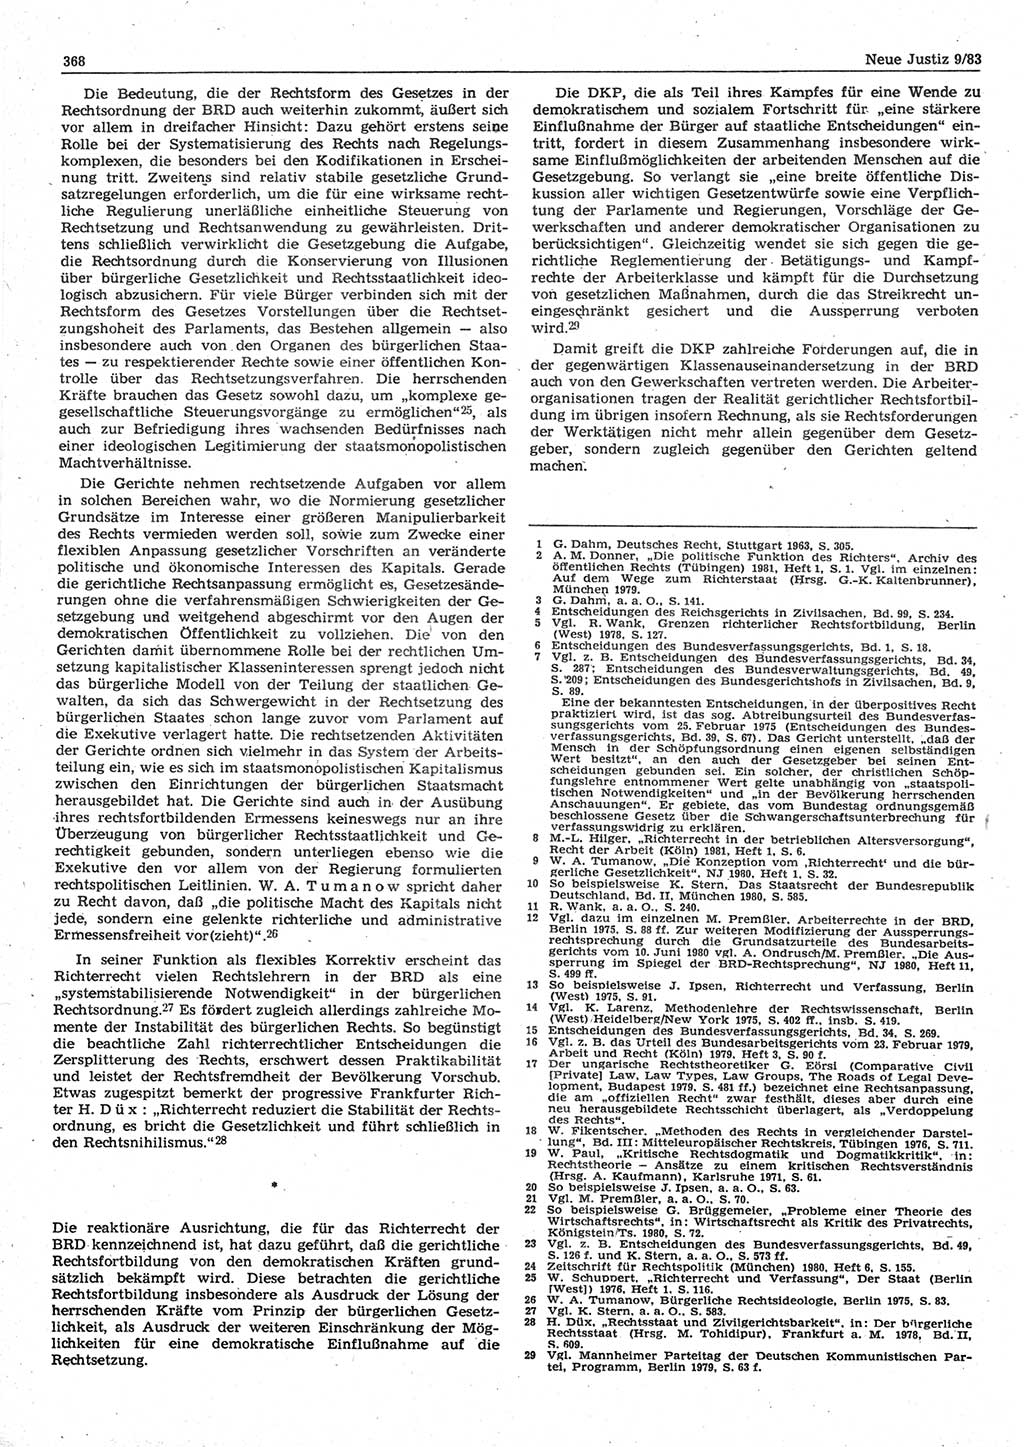 Neue Justiz (NJ), Zeitschrift für sozialistisches Recht und Gesetzlichkeit [Deutsche Demokratische Republik (DDR)], 37. Jahrgang 1983, Seite 368 (NJ DDR 1983, S. 368)